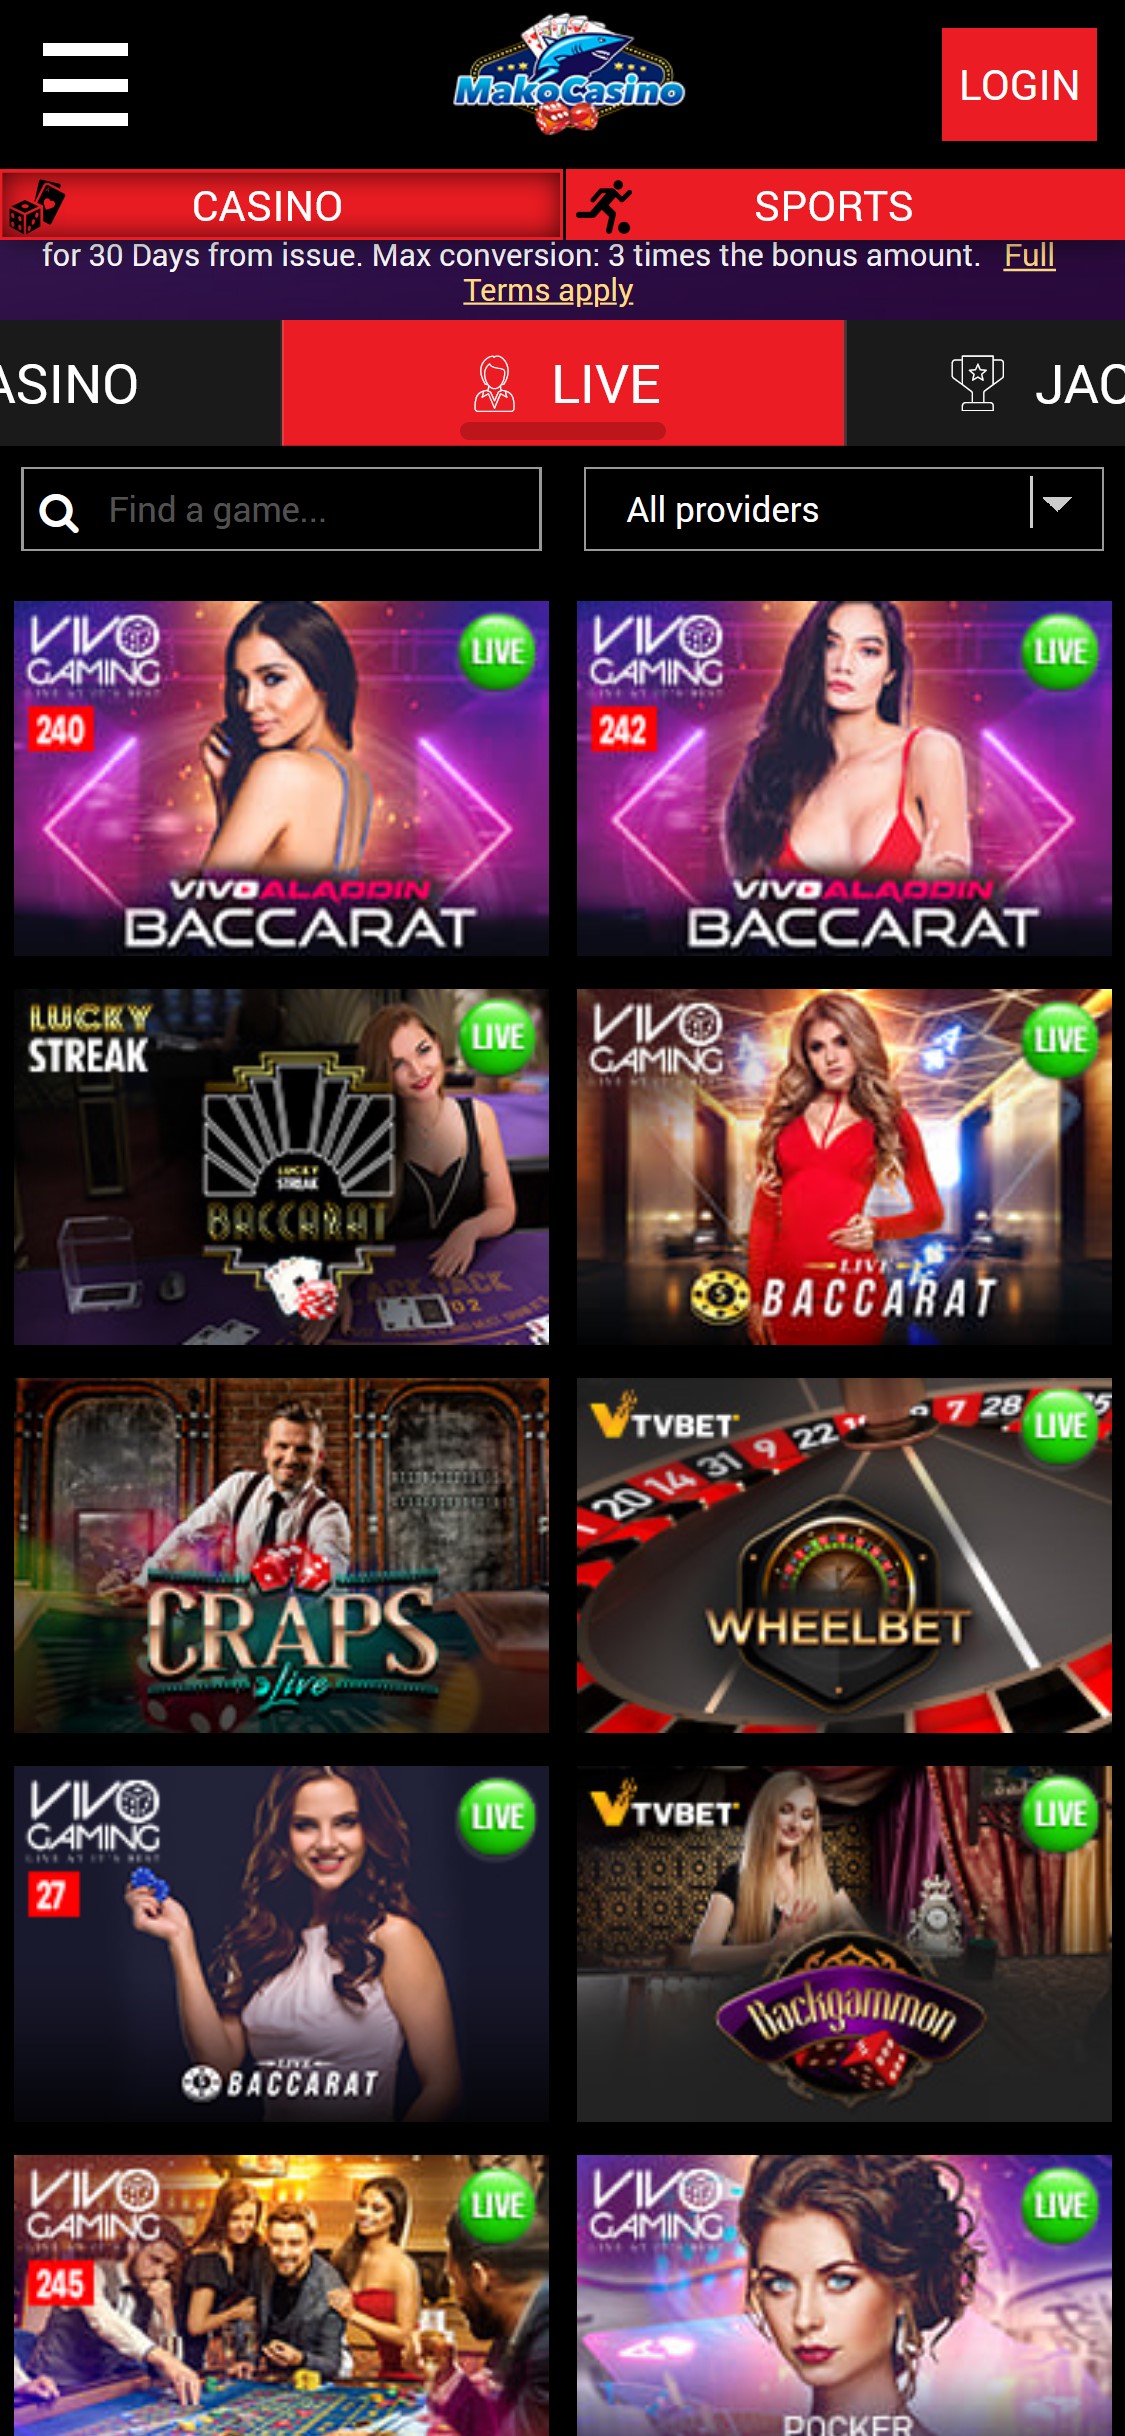 Mako Casino Mobile Live Dealer Games Review